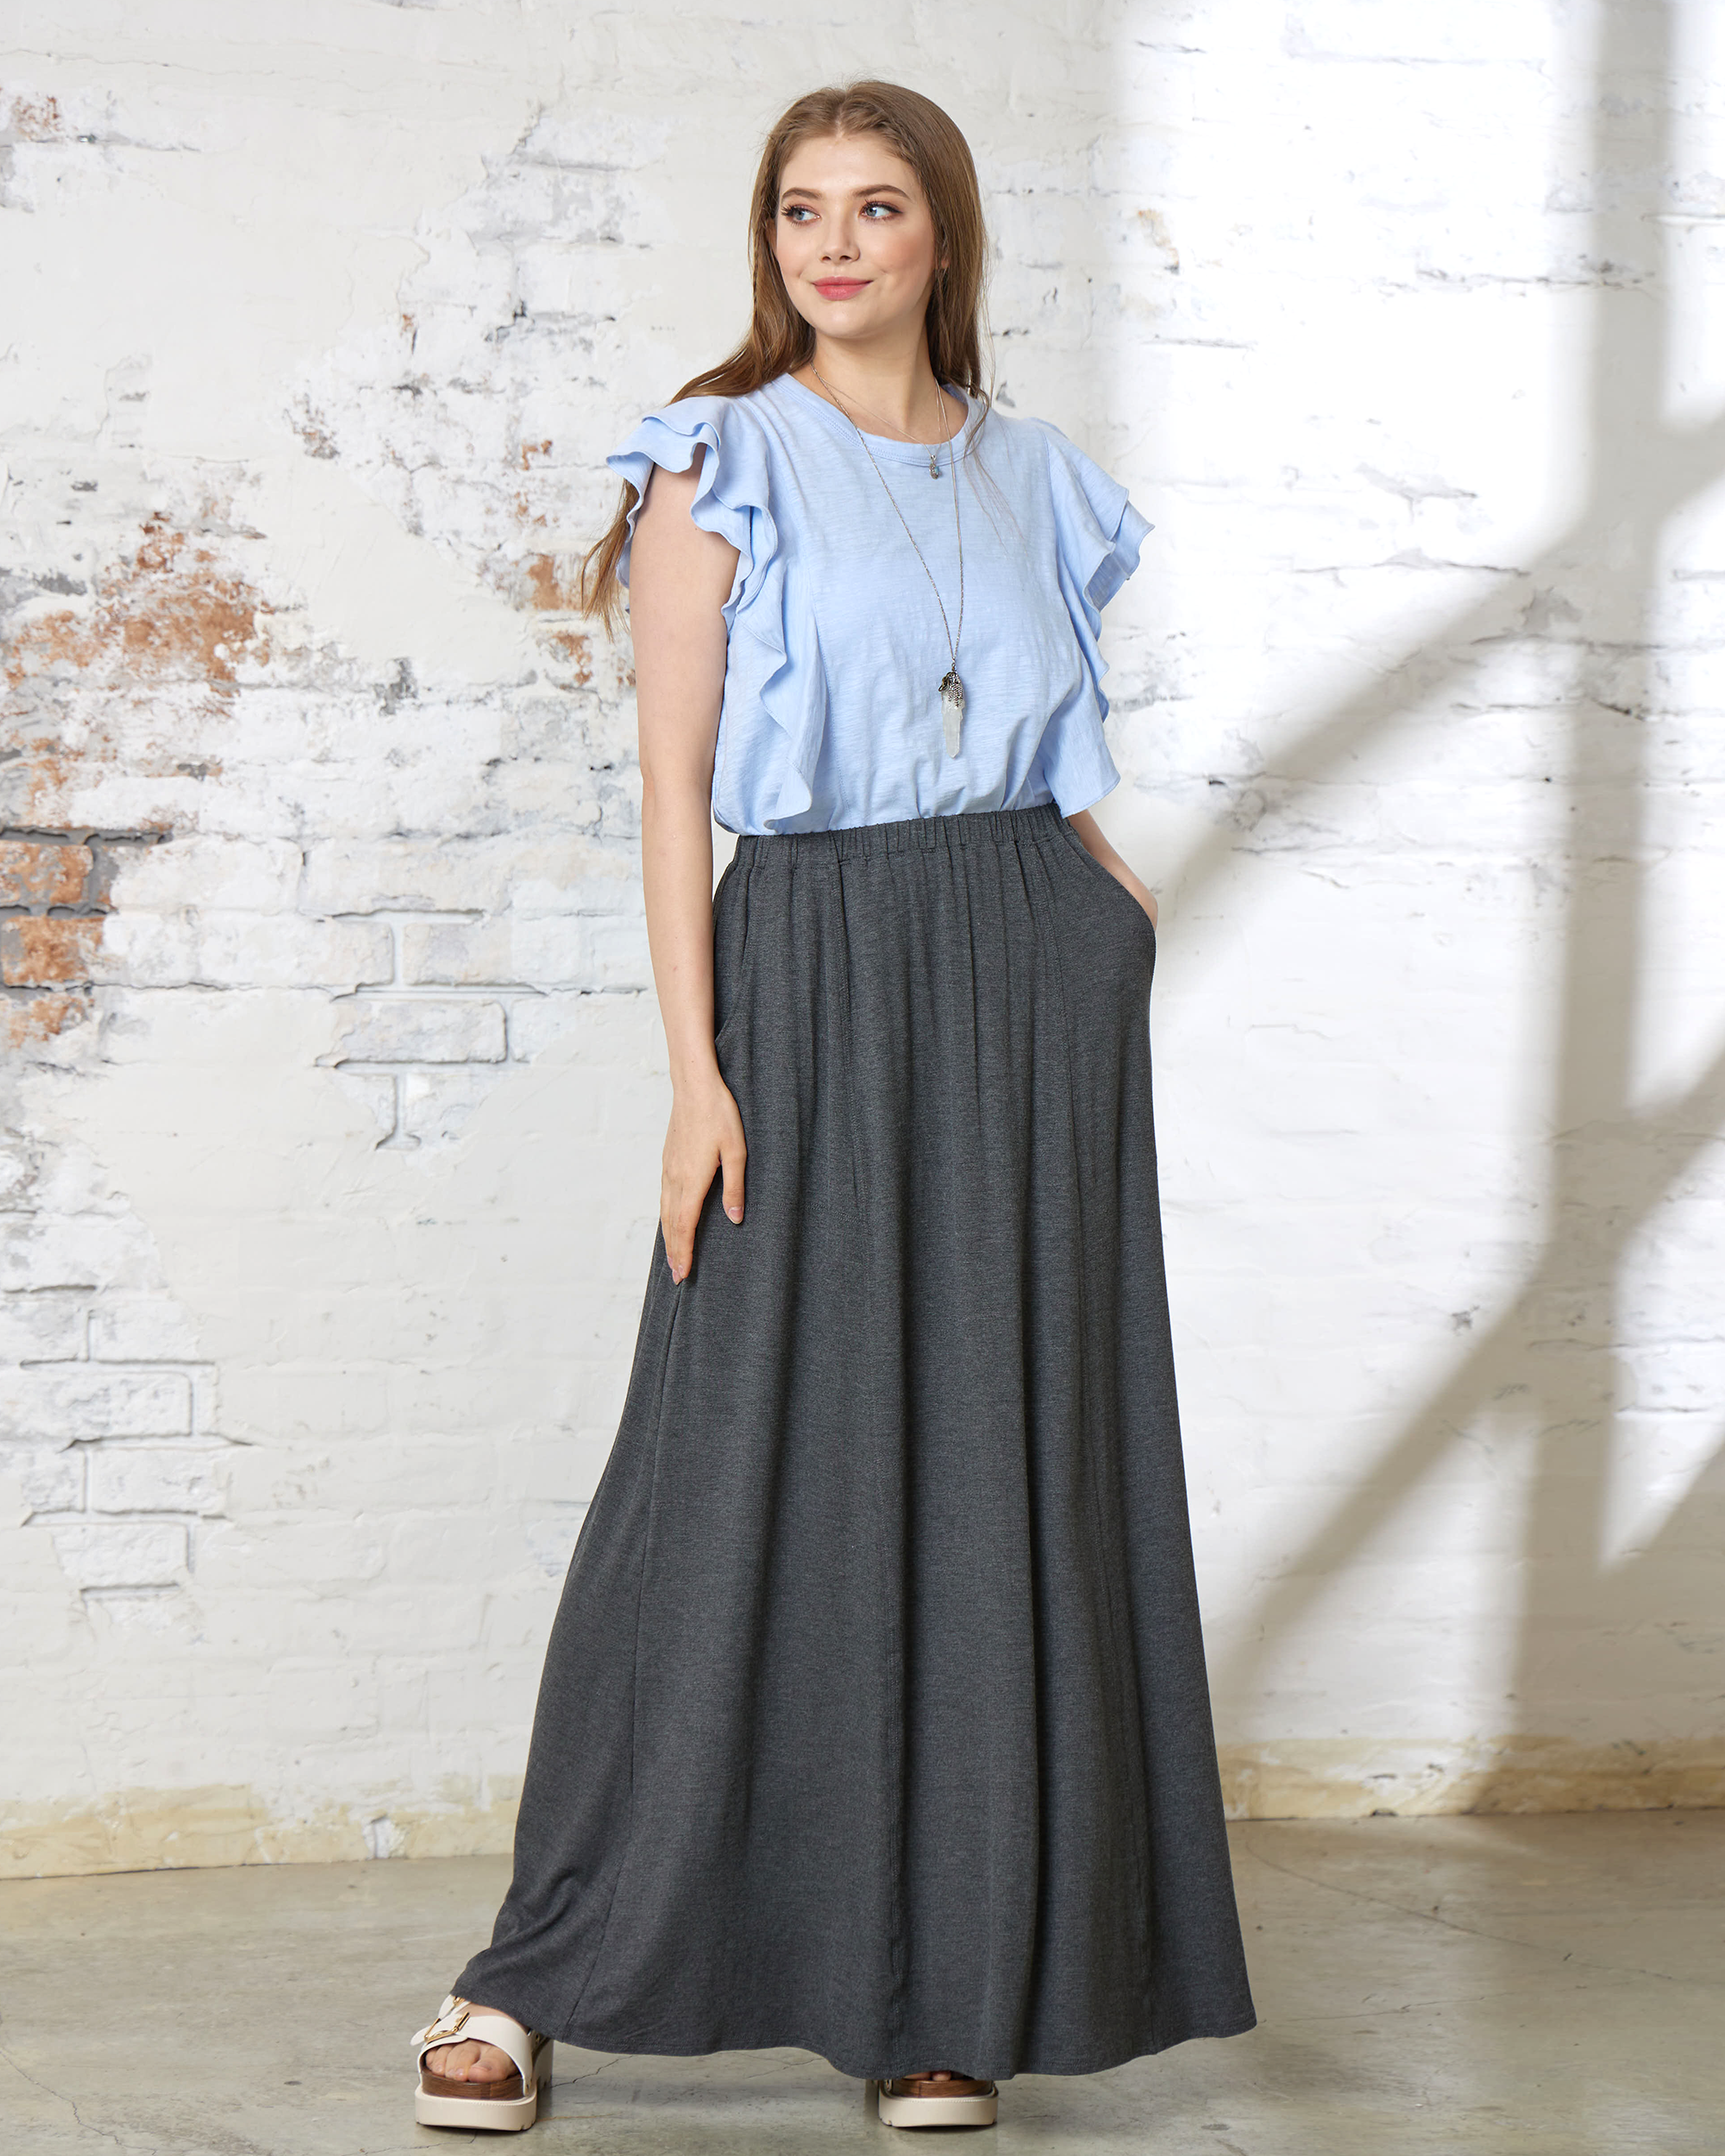 Charcoal Maxi Skirt - Soft & Lightweight Design